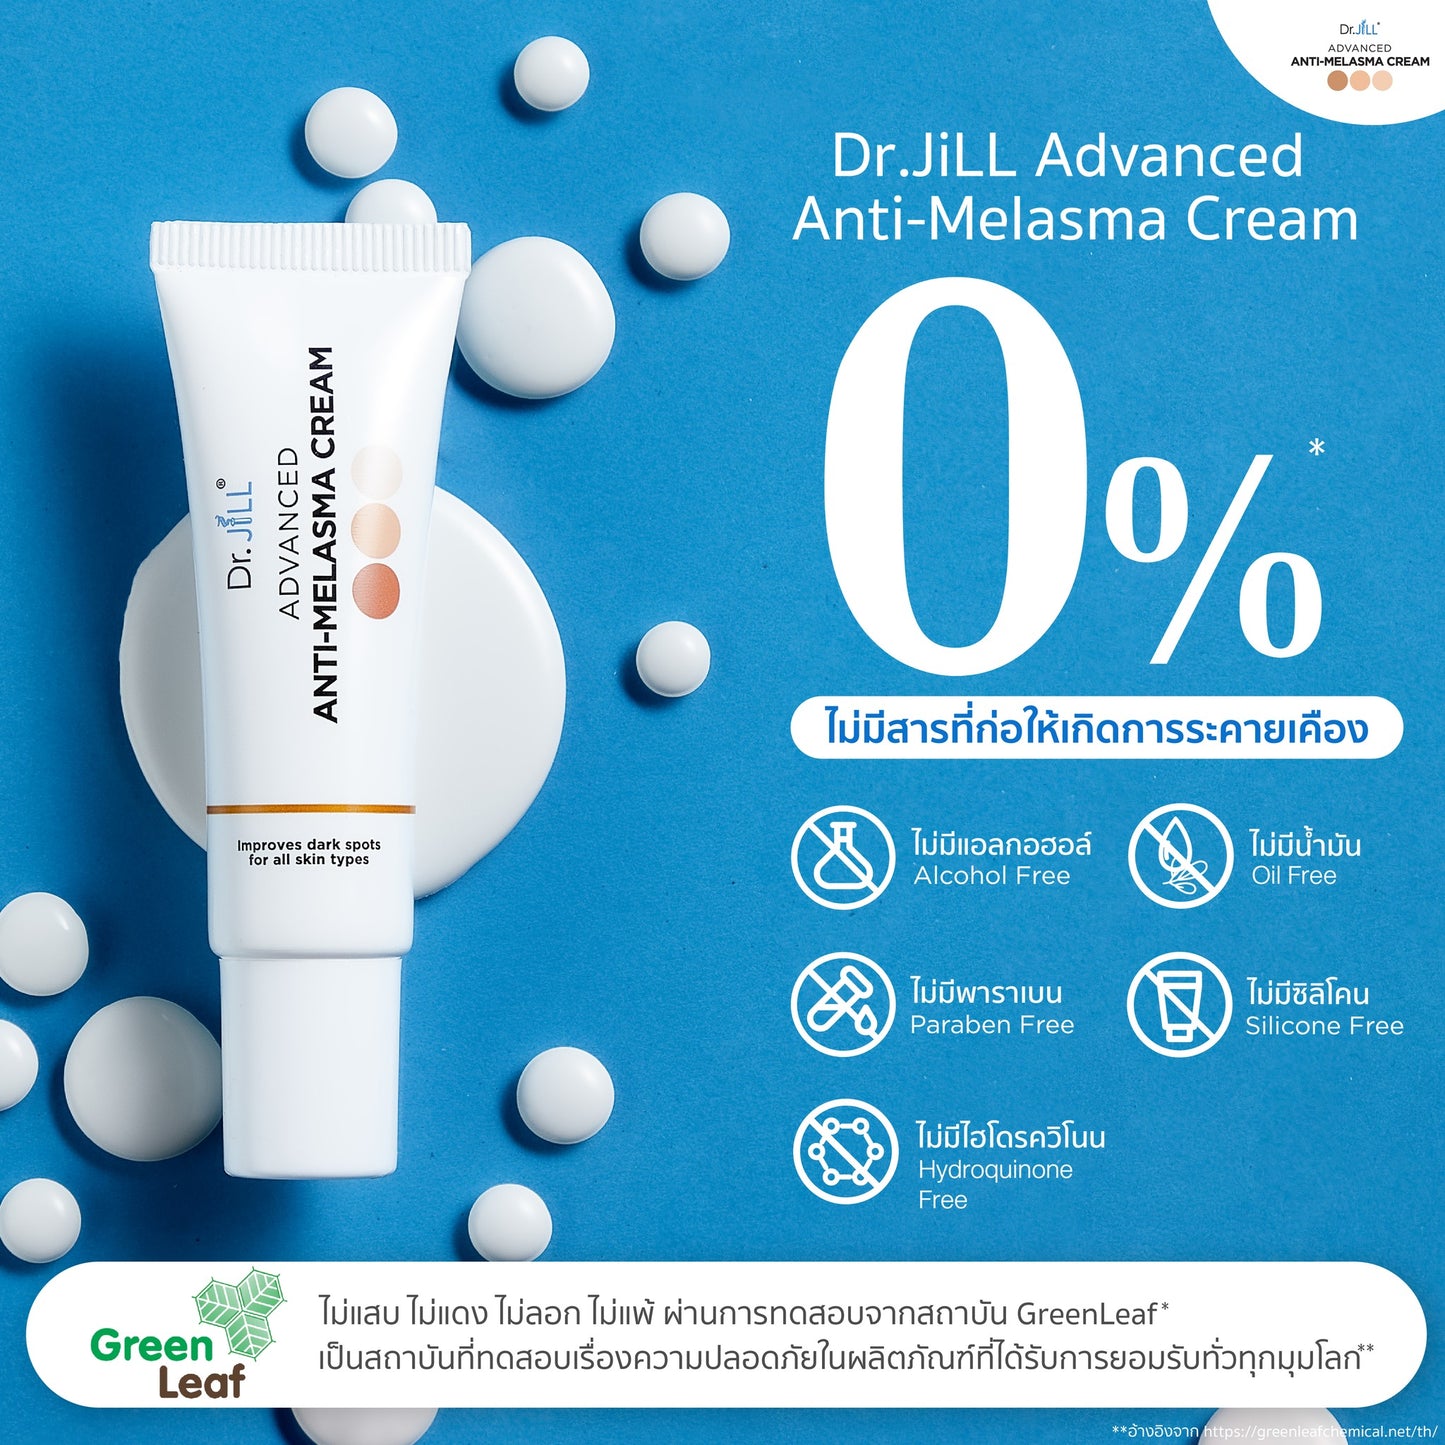 Dr.JiLL Advanced Anti-Melasma Cream 15 ml.